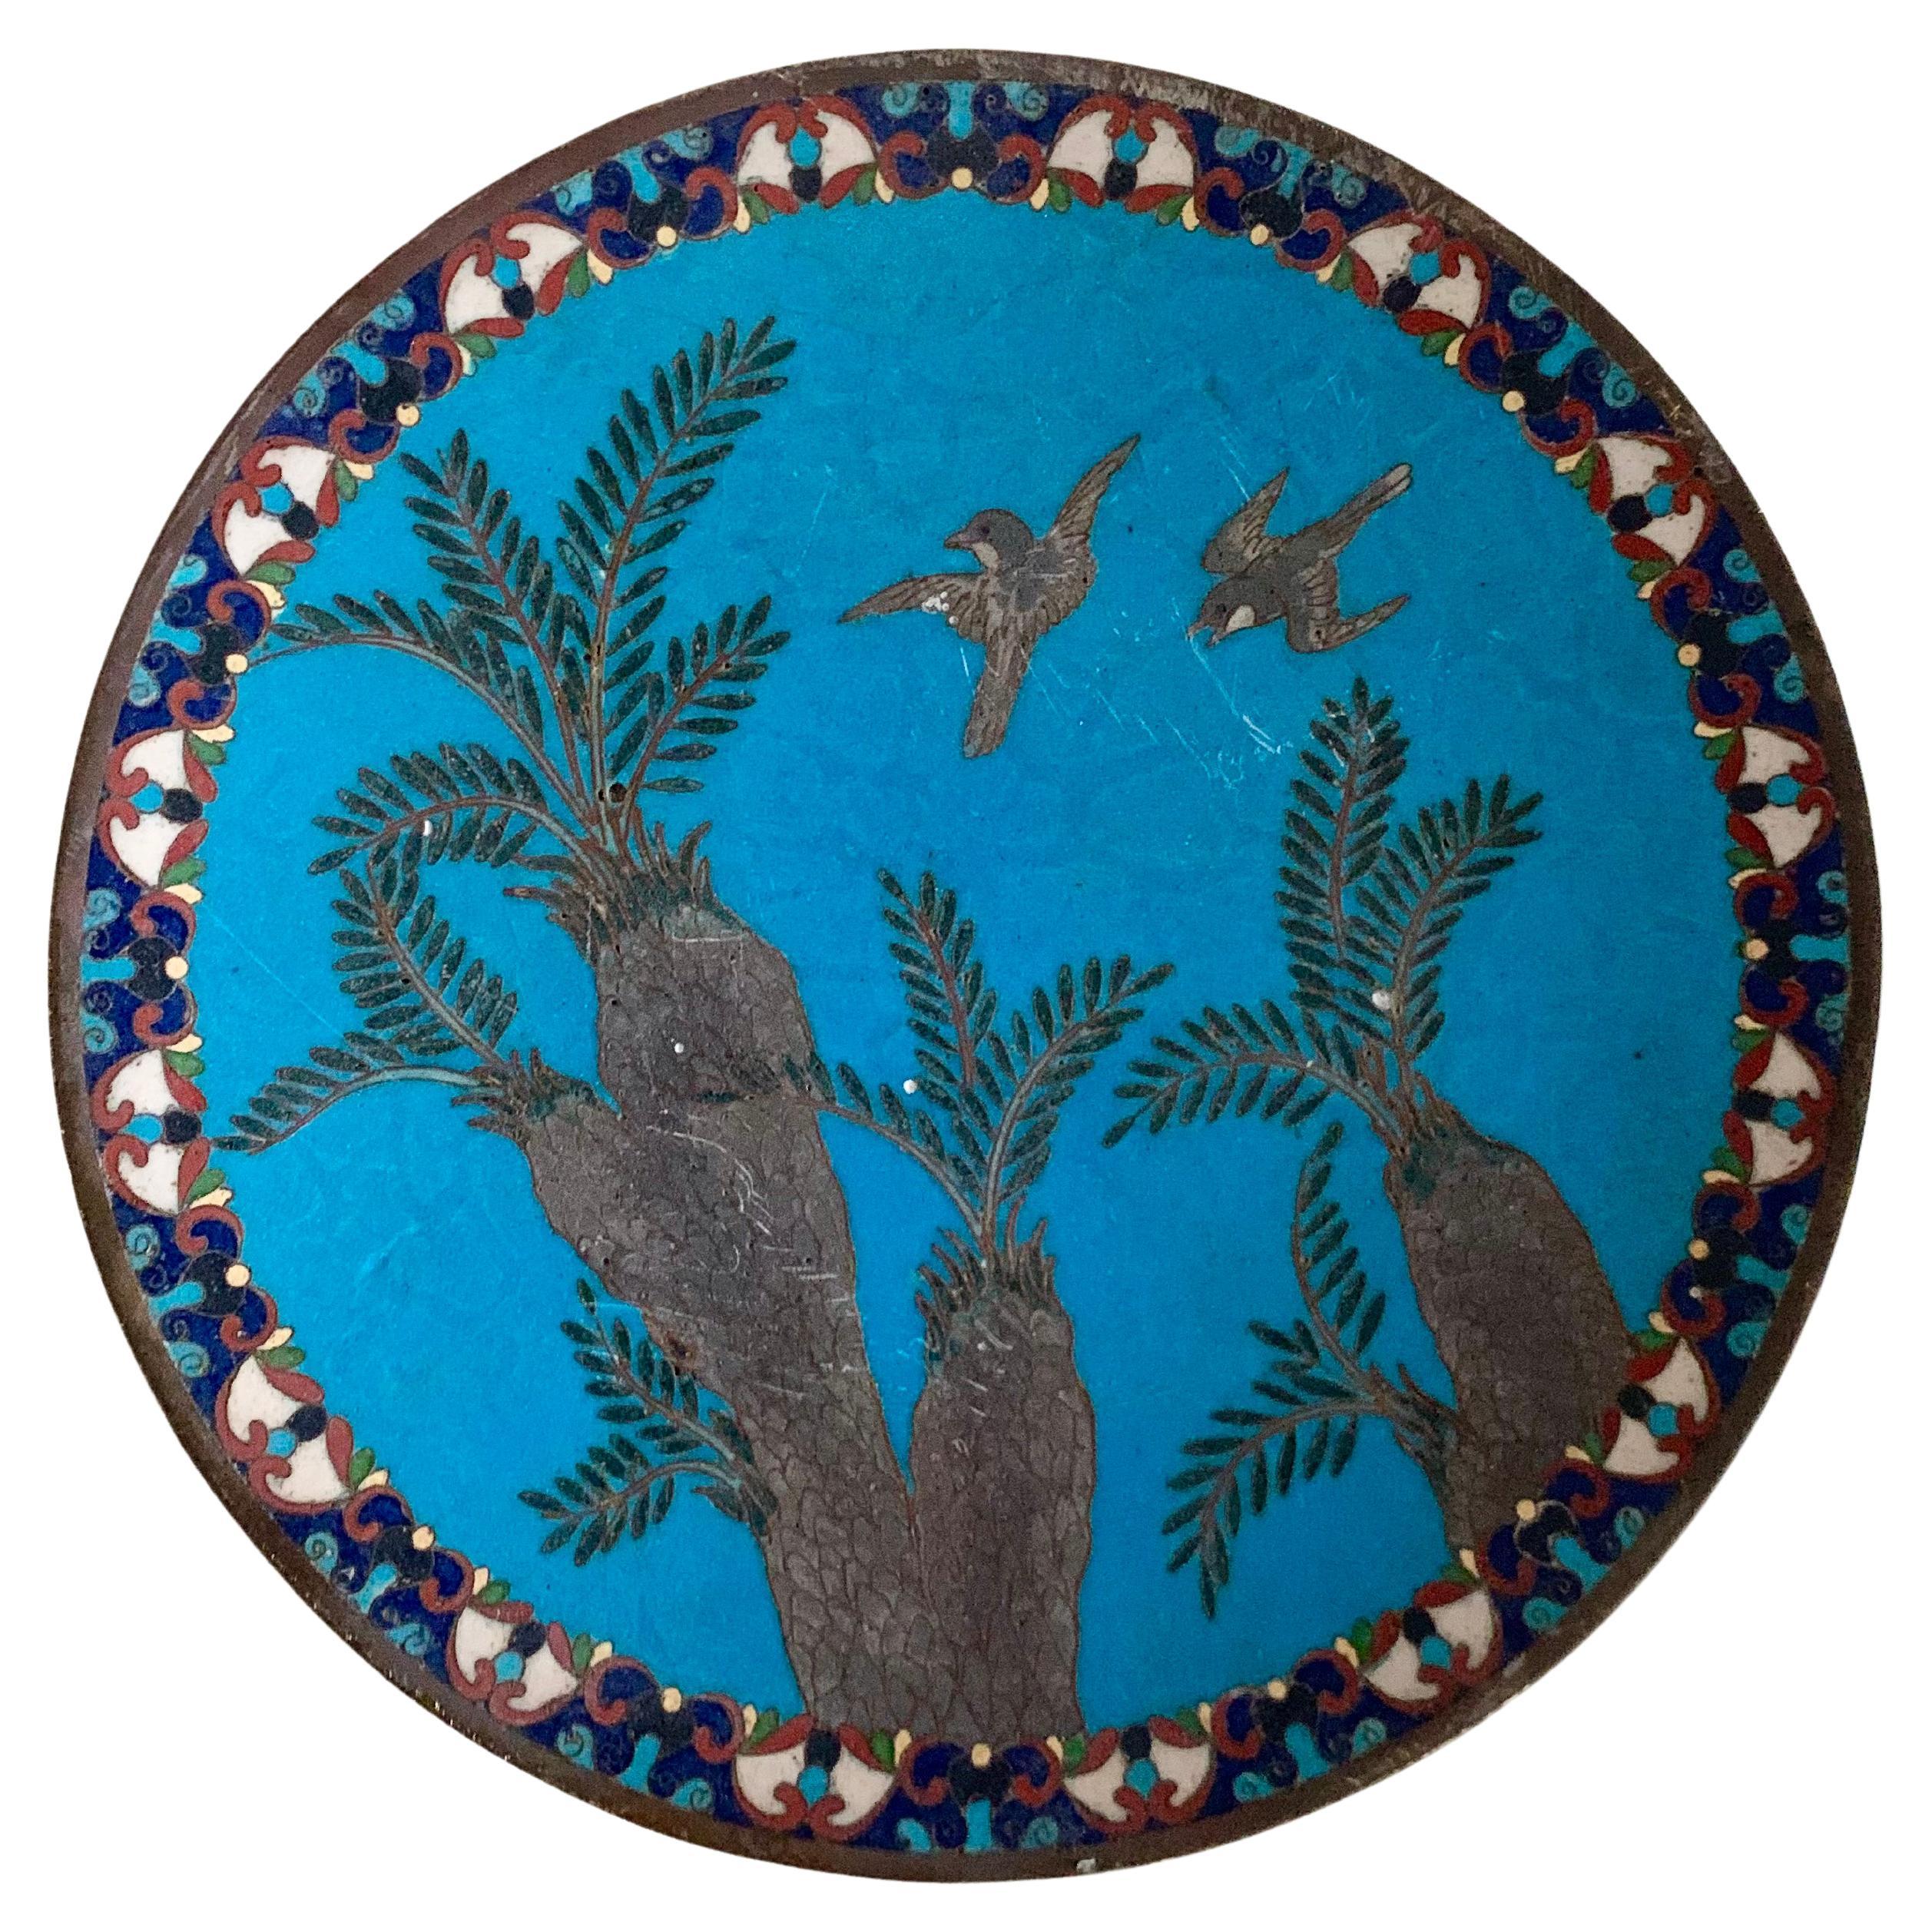 Antique Arabian Hand-Painted Metal Cloisonné Plate